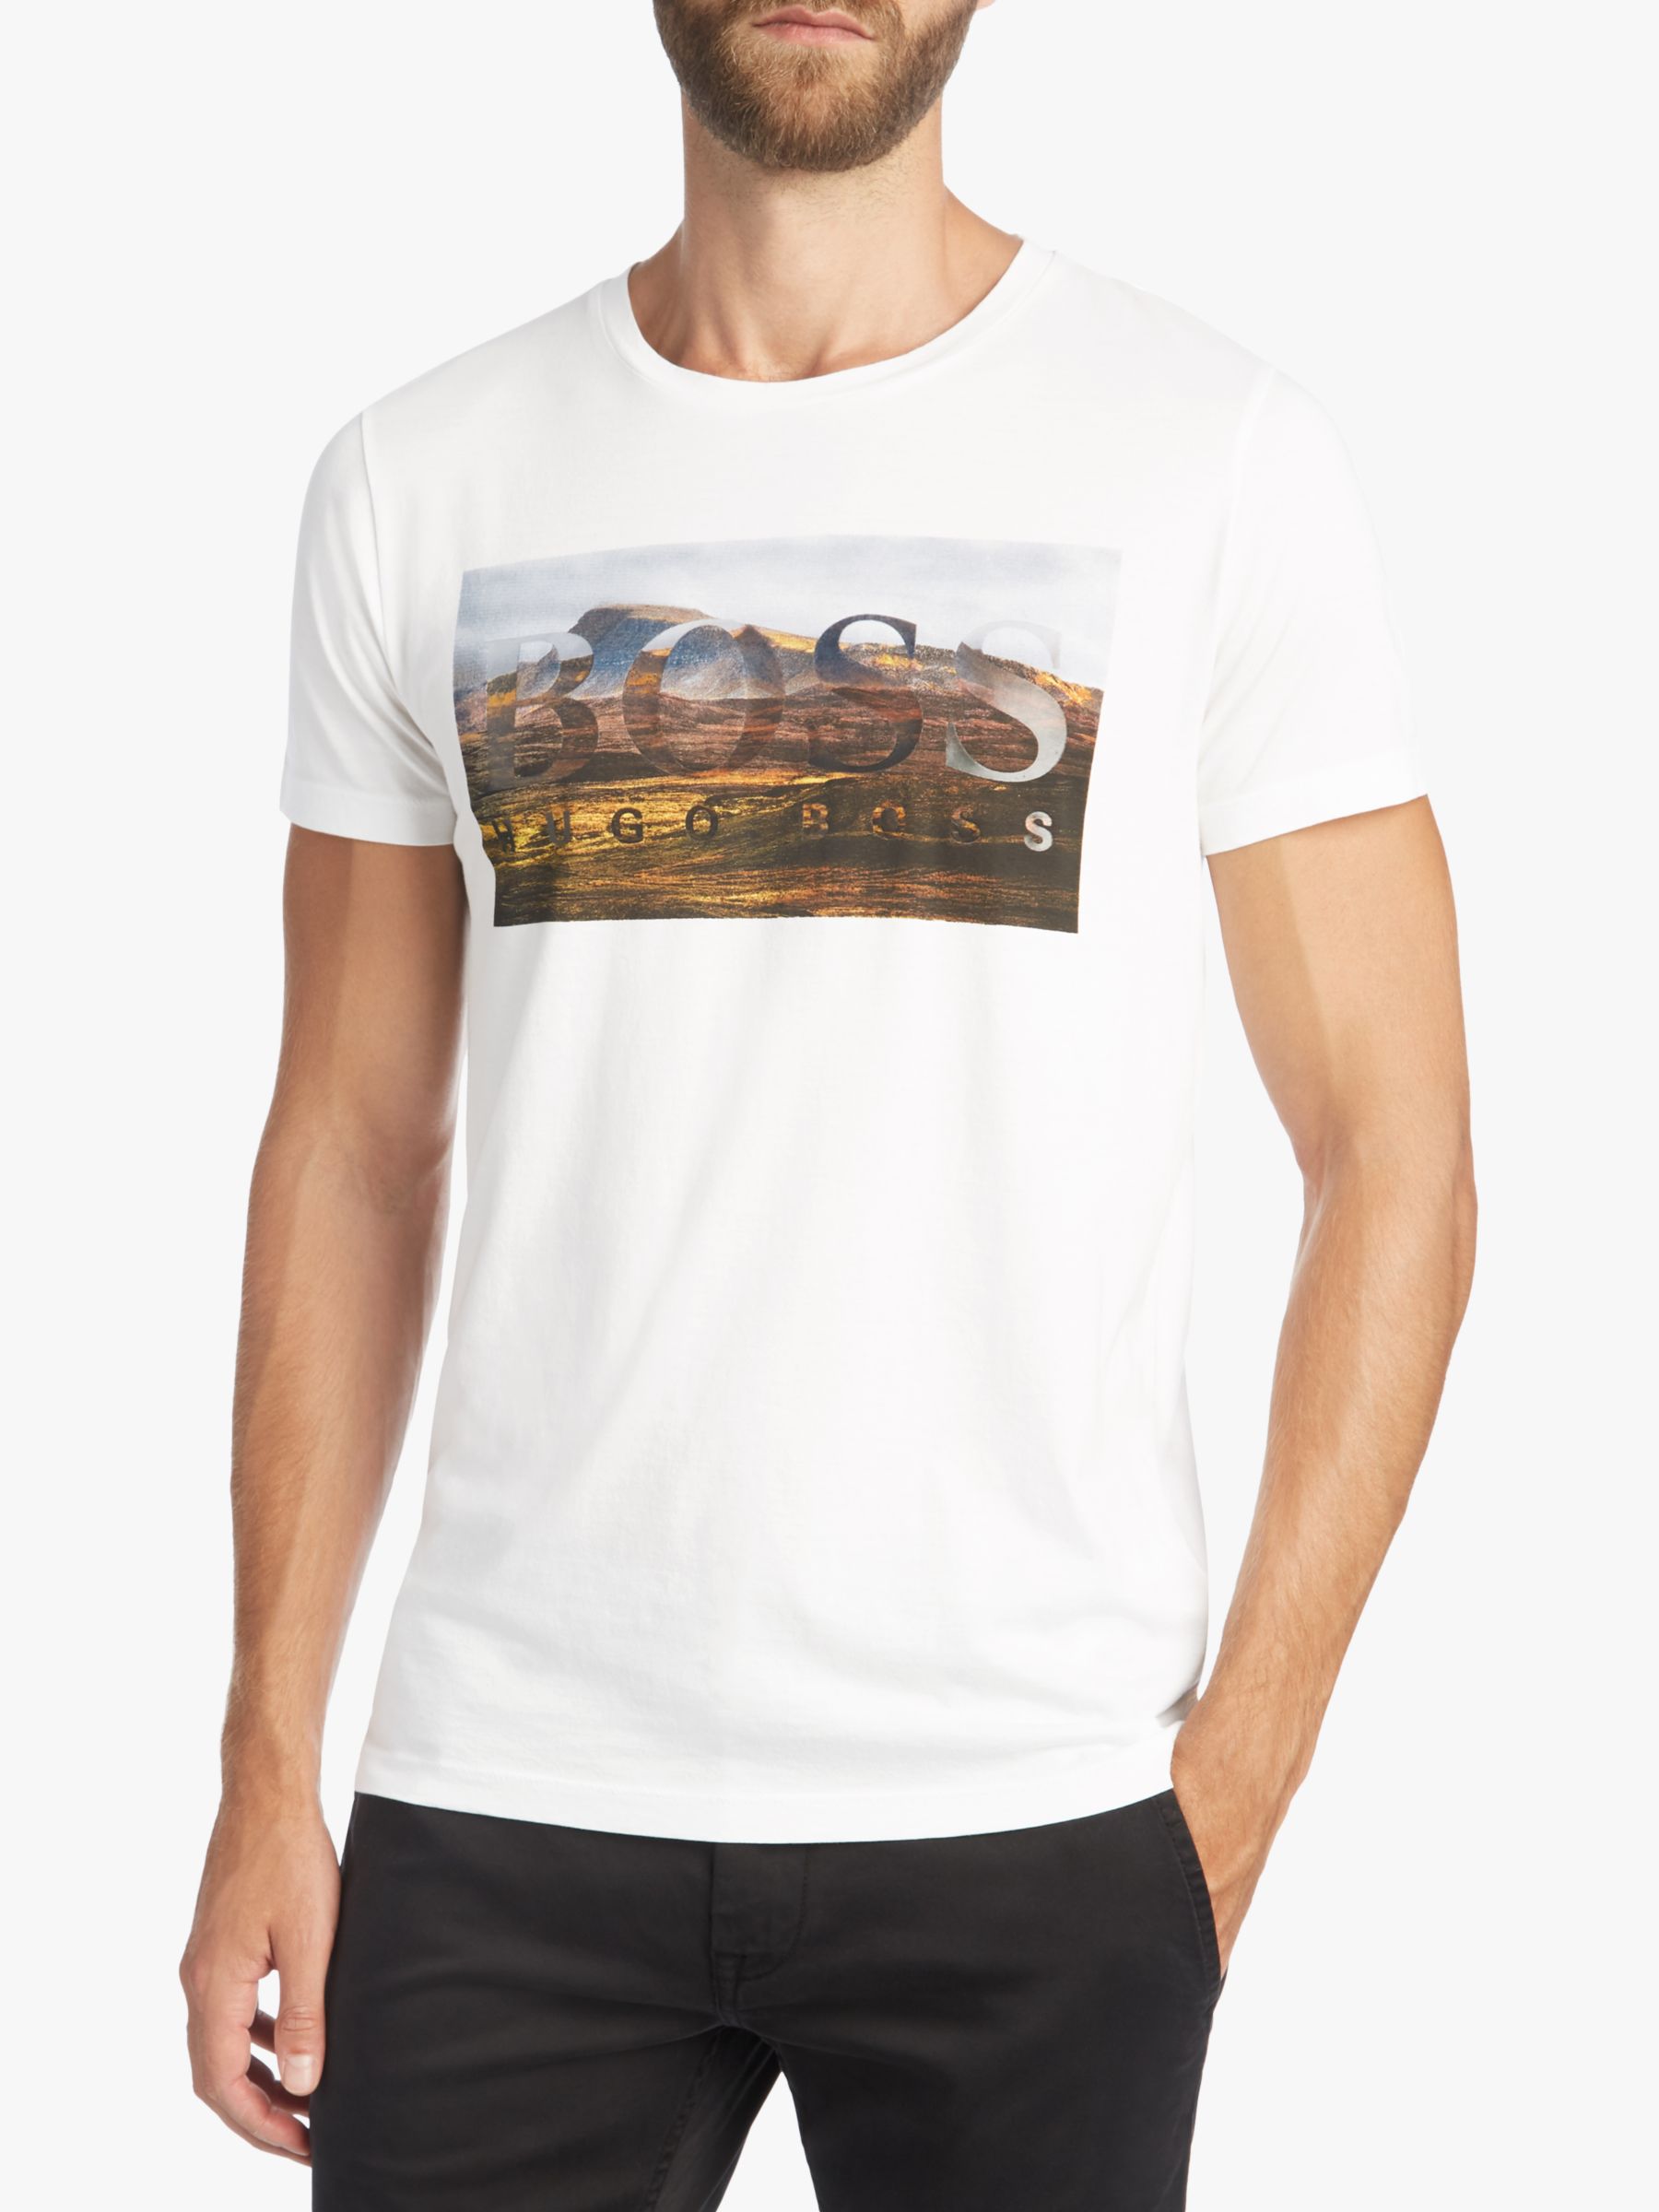 BOSS Teedog 1 Short Sleeve Graphic T-Shirt